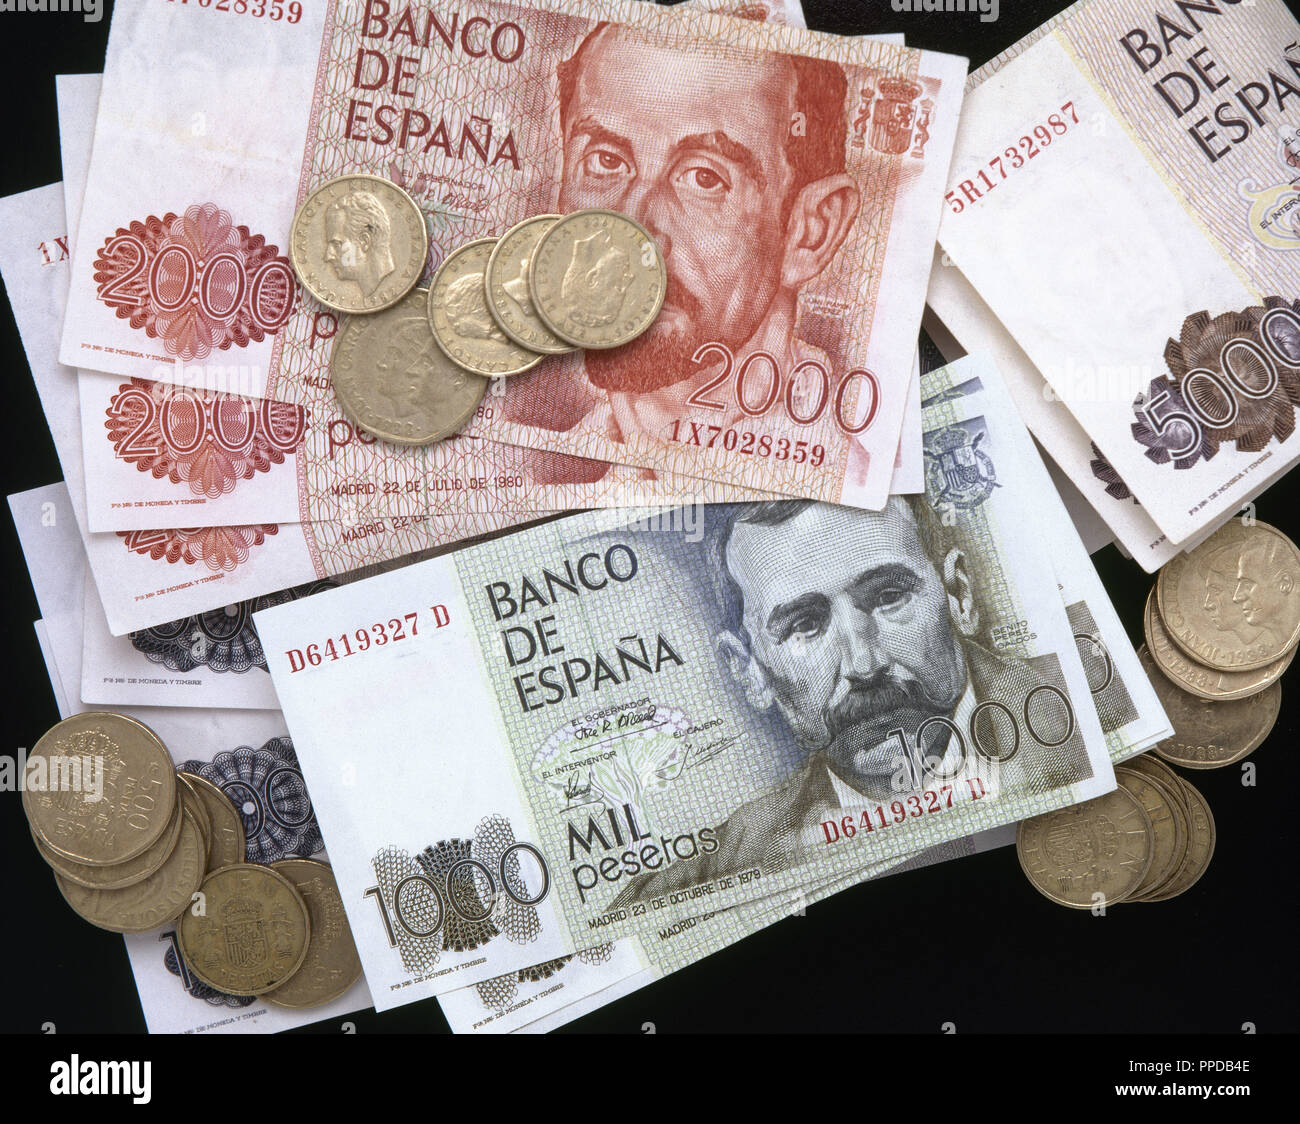 BILLETES Y MONEDAS del Banco de España (PESETAS) . Stock Photo